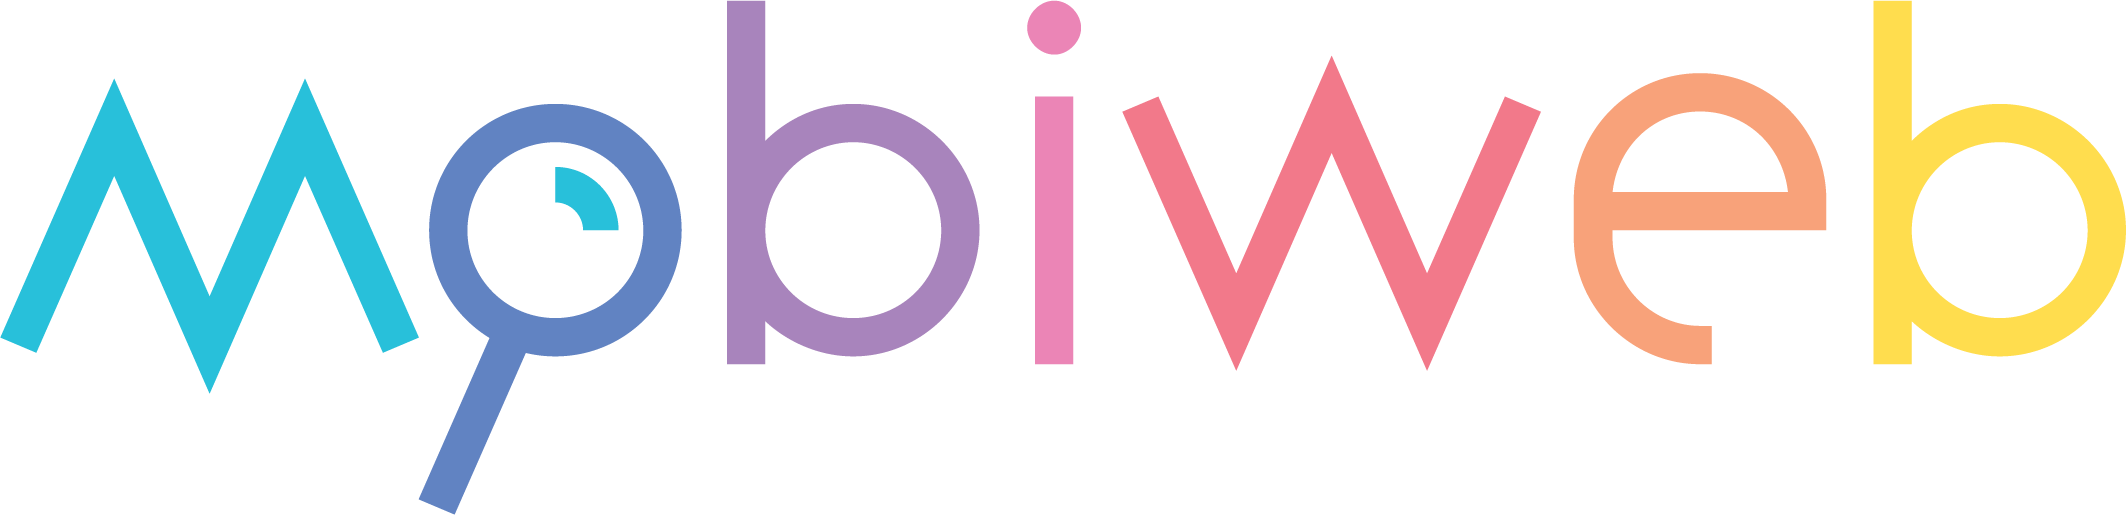 Mobiweb logo